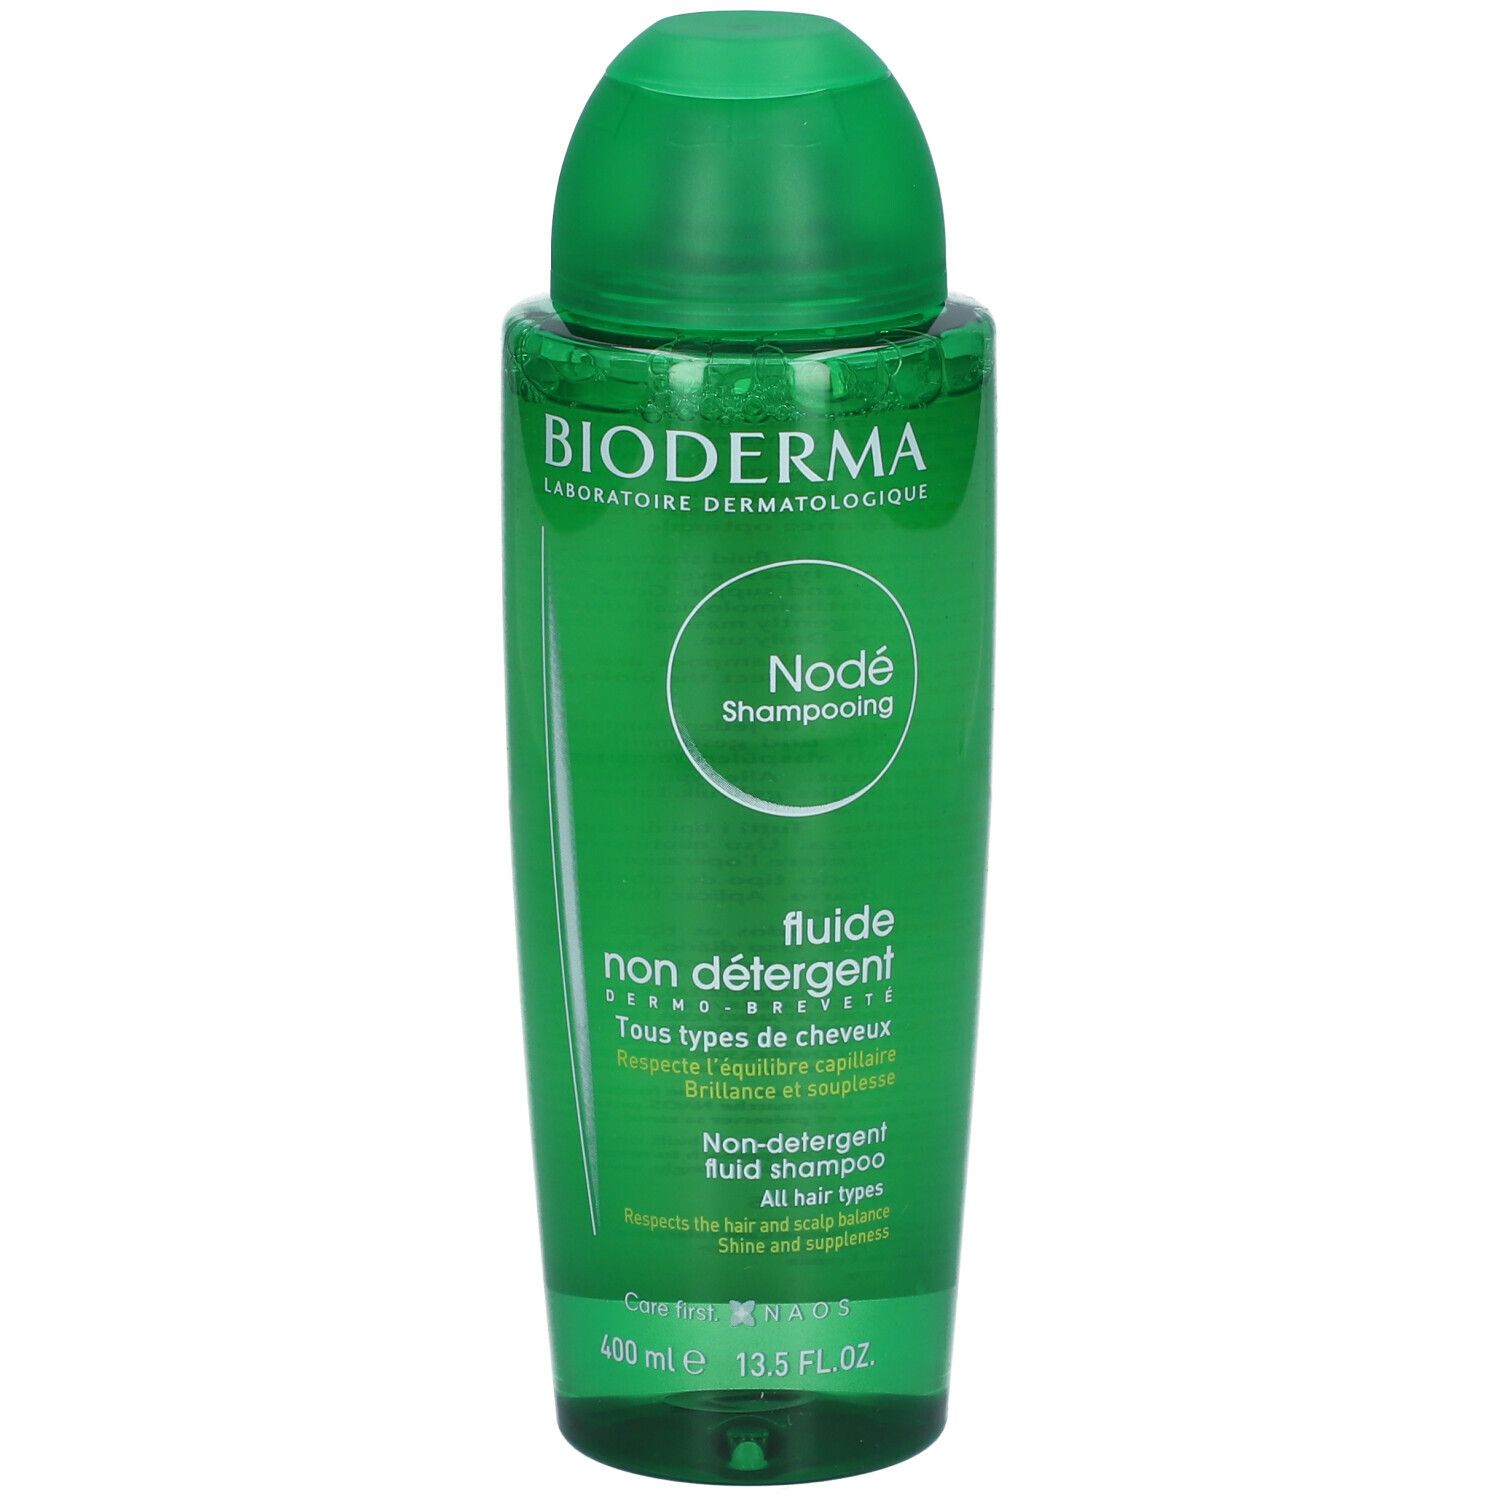 Image of BIODERMA Nodé Fluide Shampoo